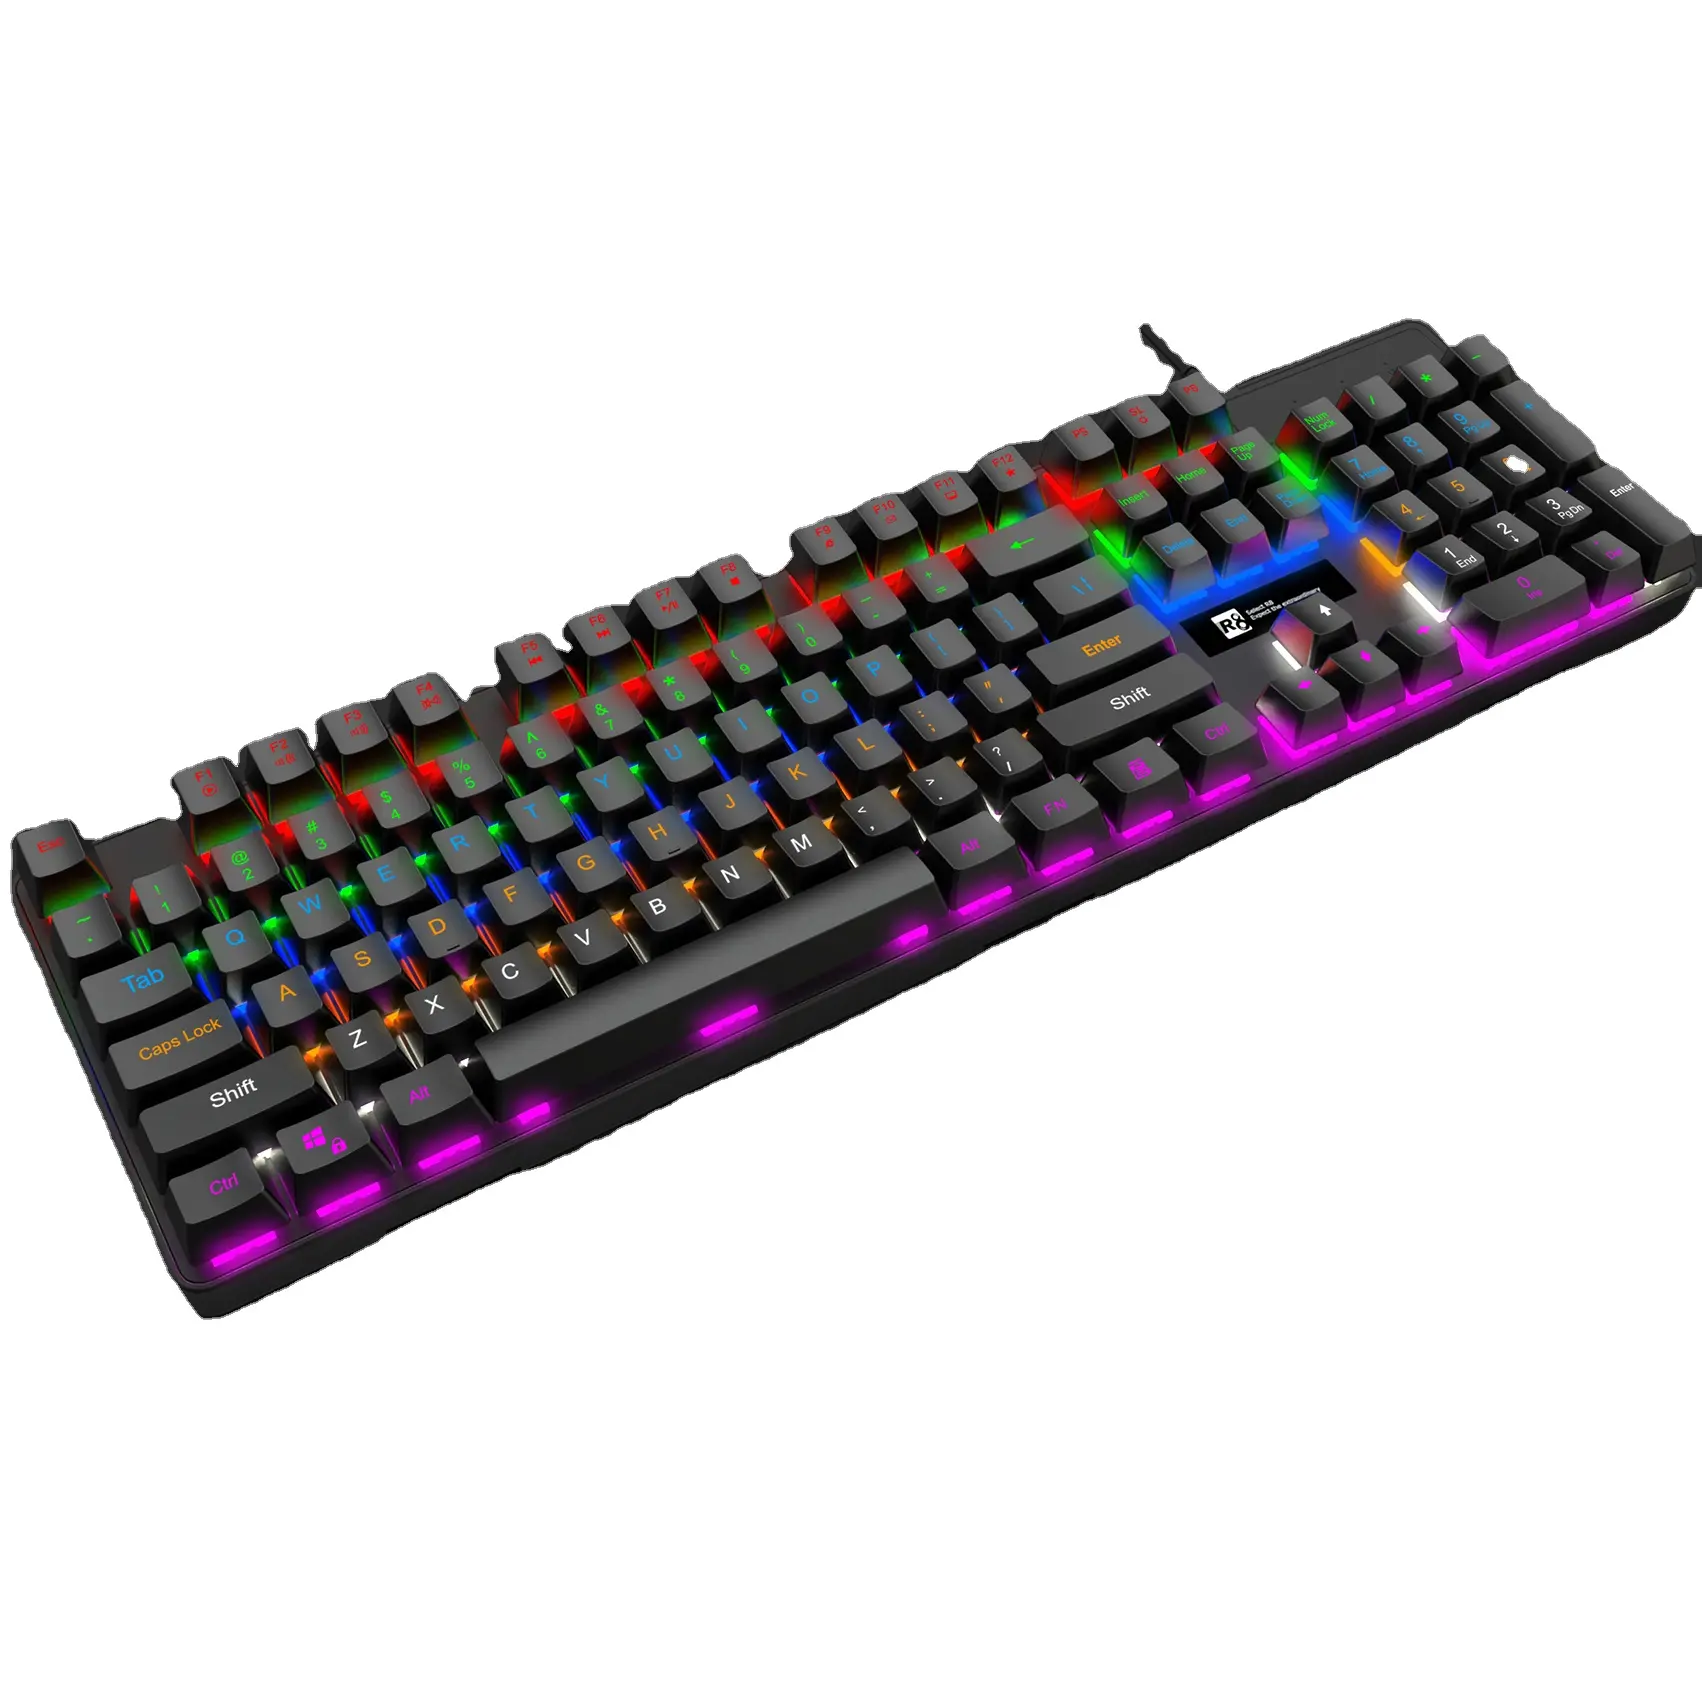 OEM Keyboard Pemutar Nama Merek RGB, Papan Ketik Permainan Komputer Ergonomis dengan Lampu Led Warna Pelangi